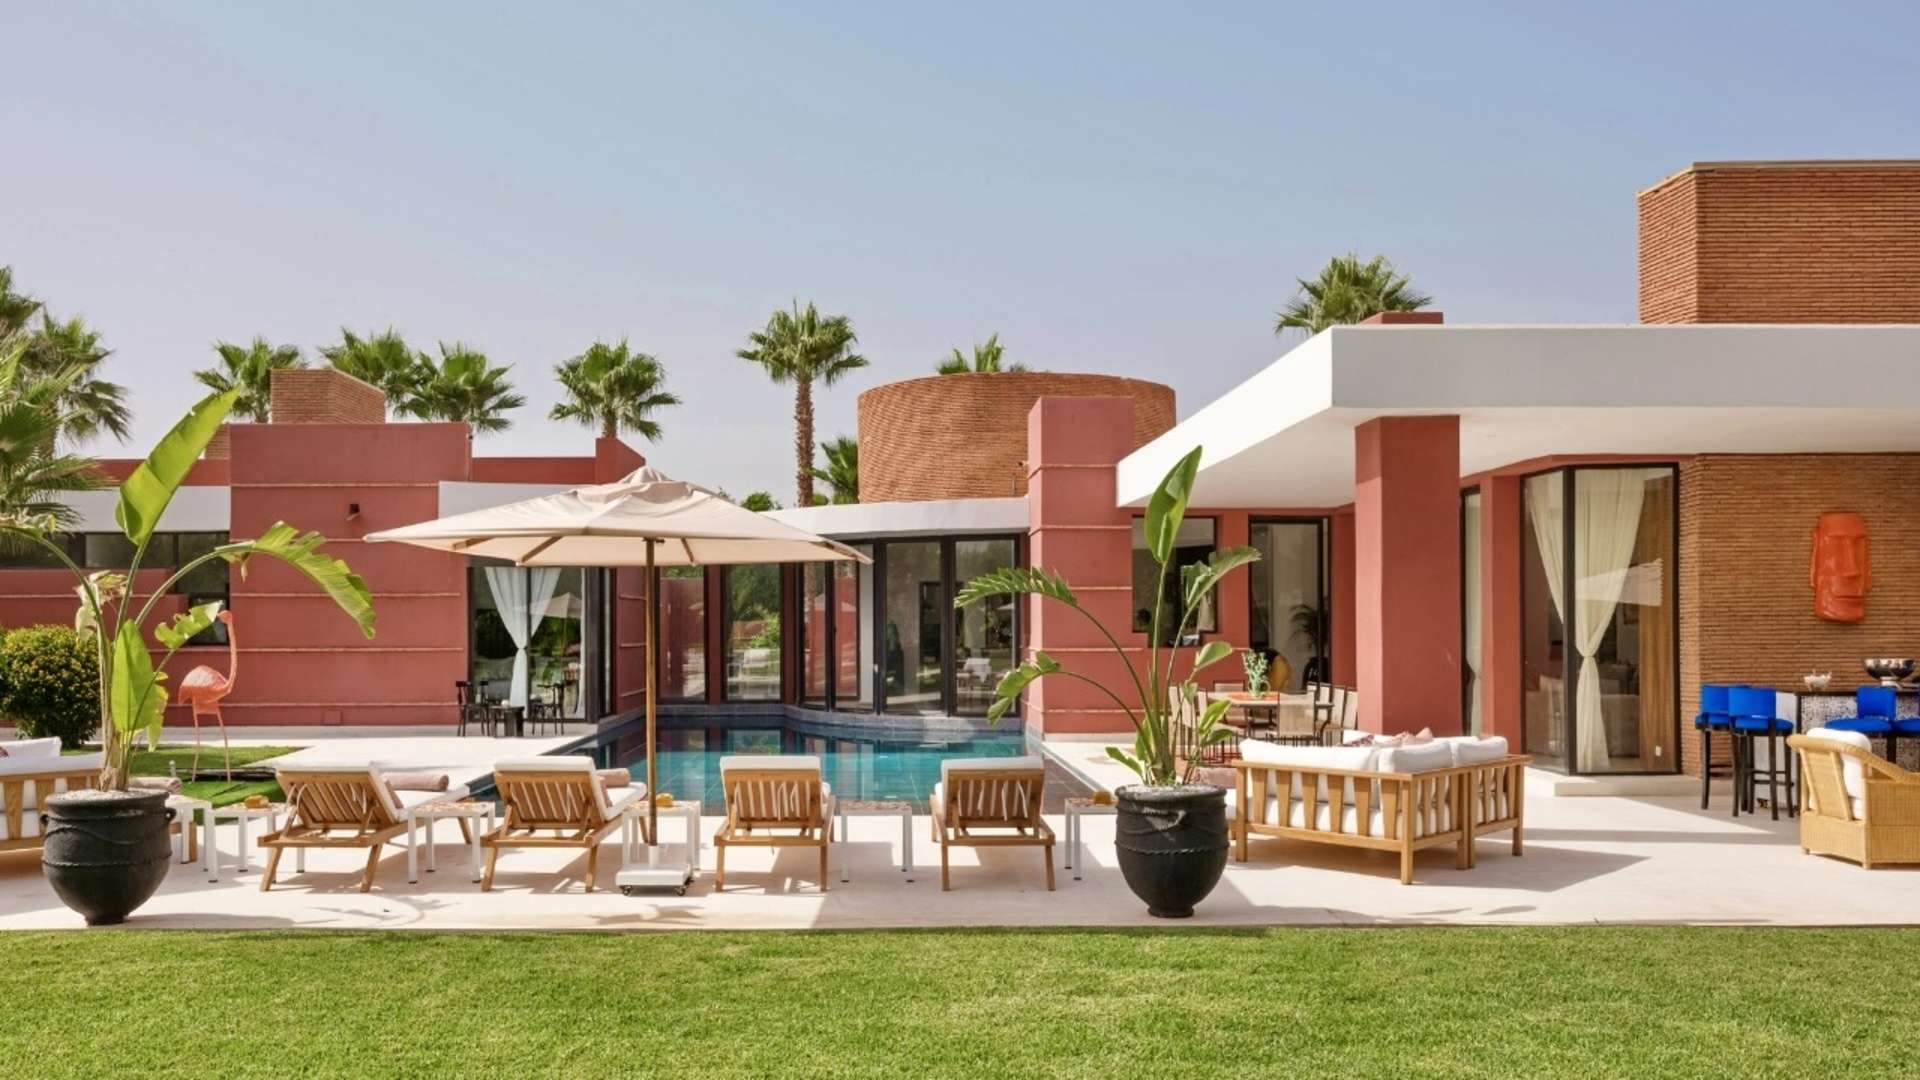 Location de vacances,Villa,Villa 4 chambres sur 5000M2 sur la route de l'ourika dans un domaine sécurisé,Marrakech,Route de l'Ourika